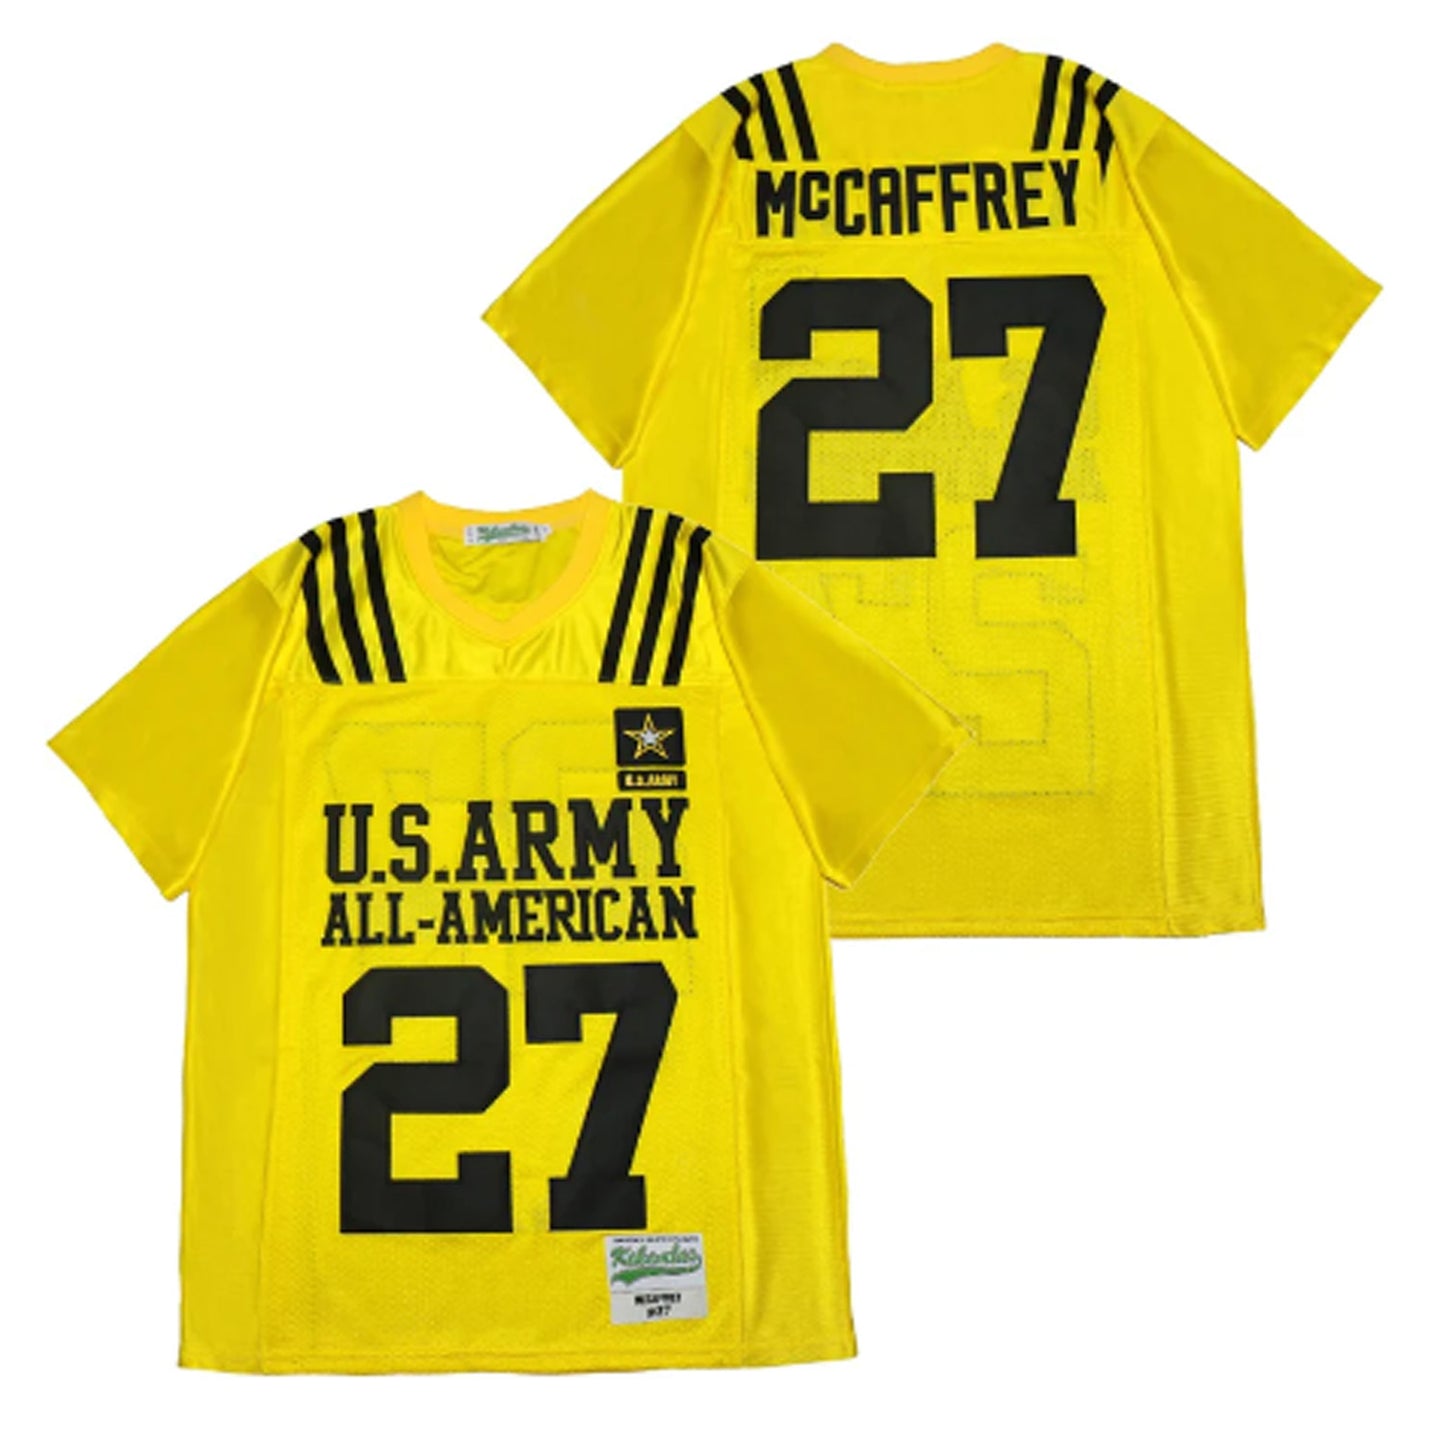 Christian McCaffrey U.S. Army All-American Football 27 Jersey